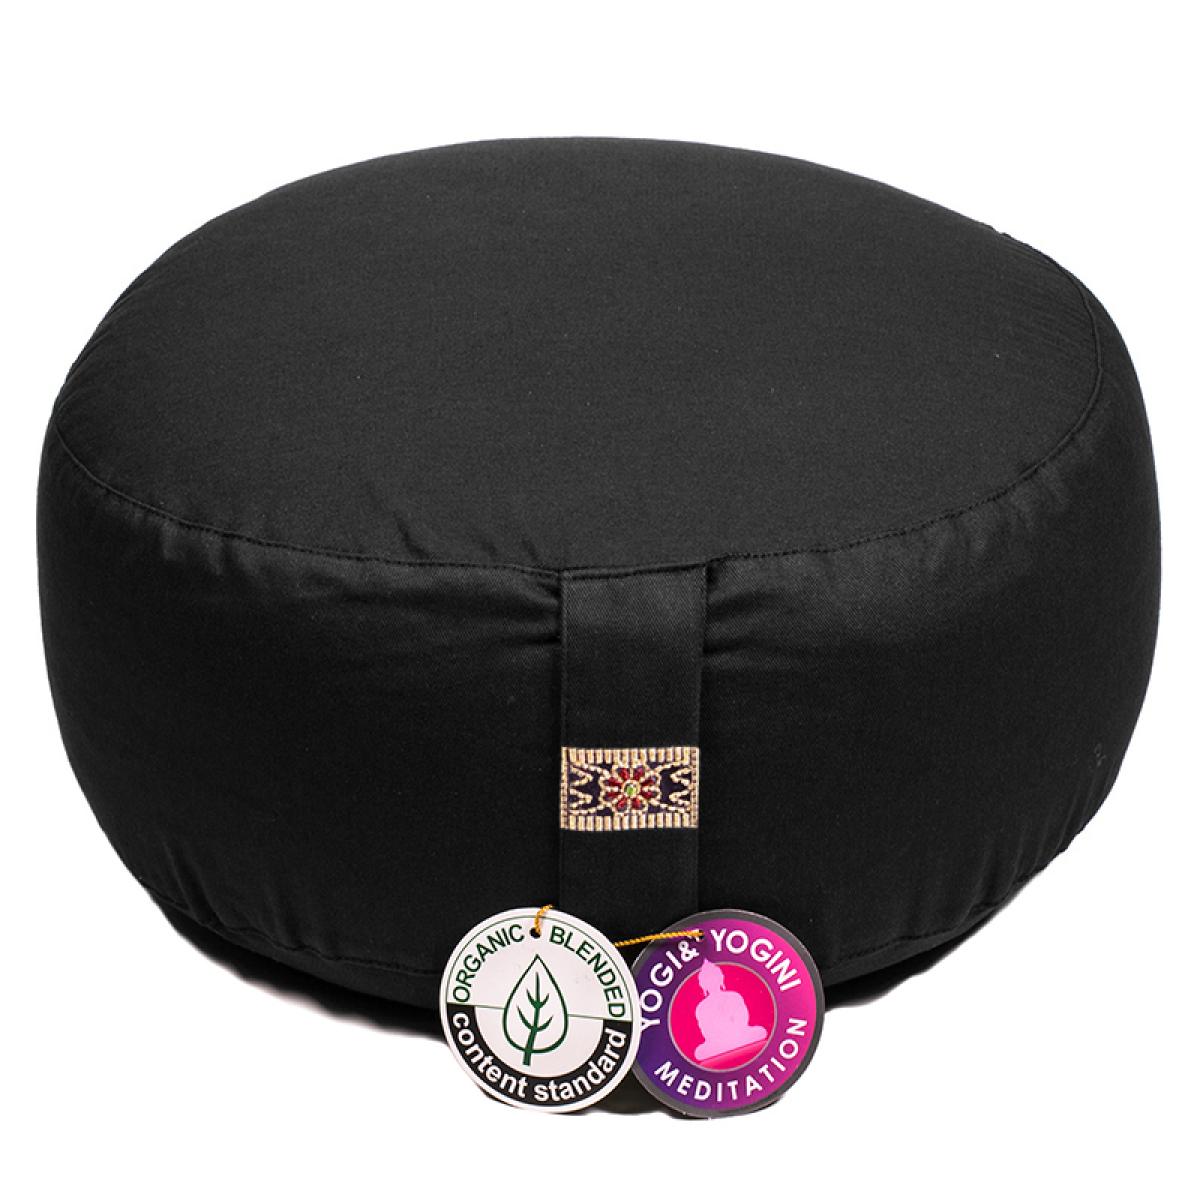 Yogi & Yogini yoga & mediation cushion black ➤ www.bokken-shop.de buy › Yoga cushion ✓ 100% organic cotton. Your meditation specialist shop!